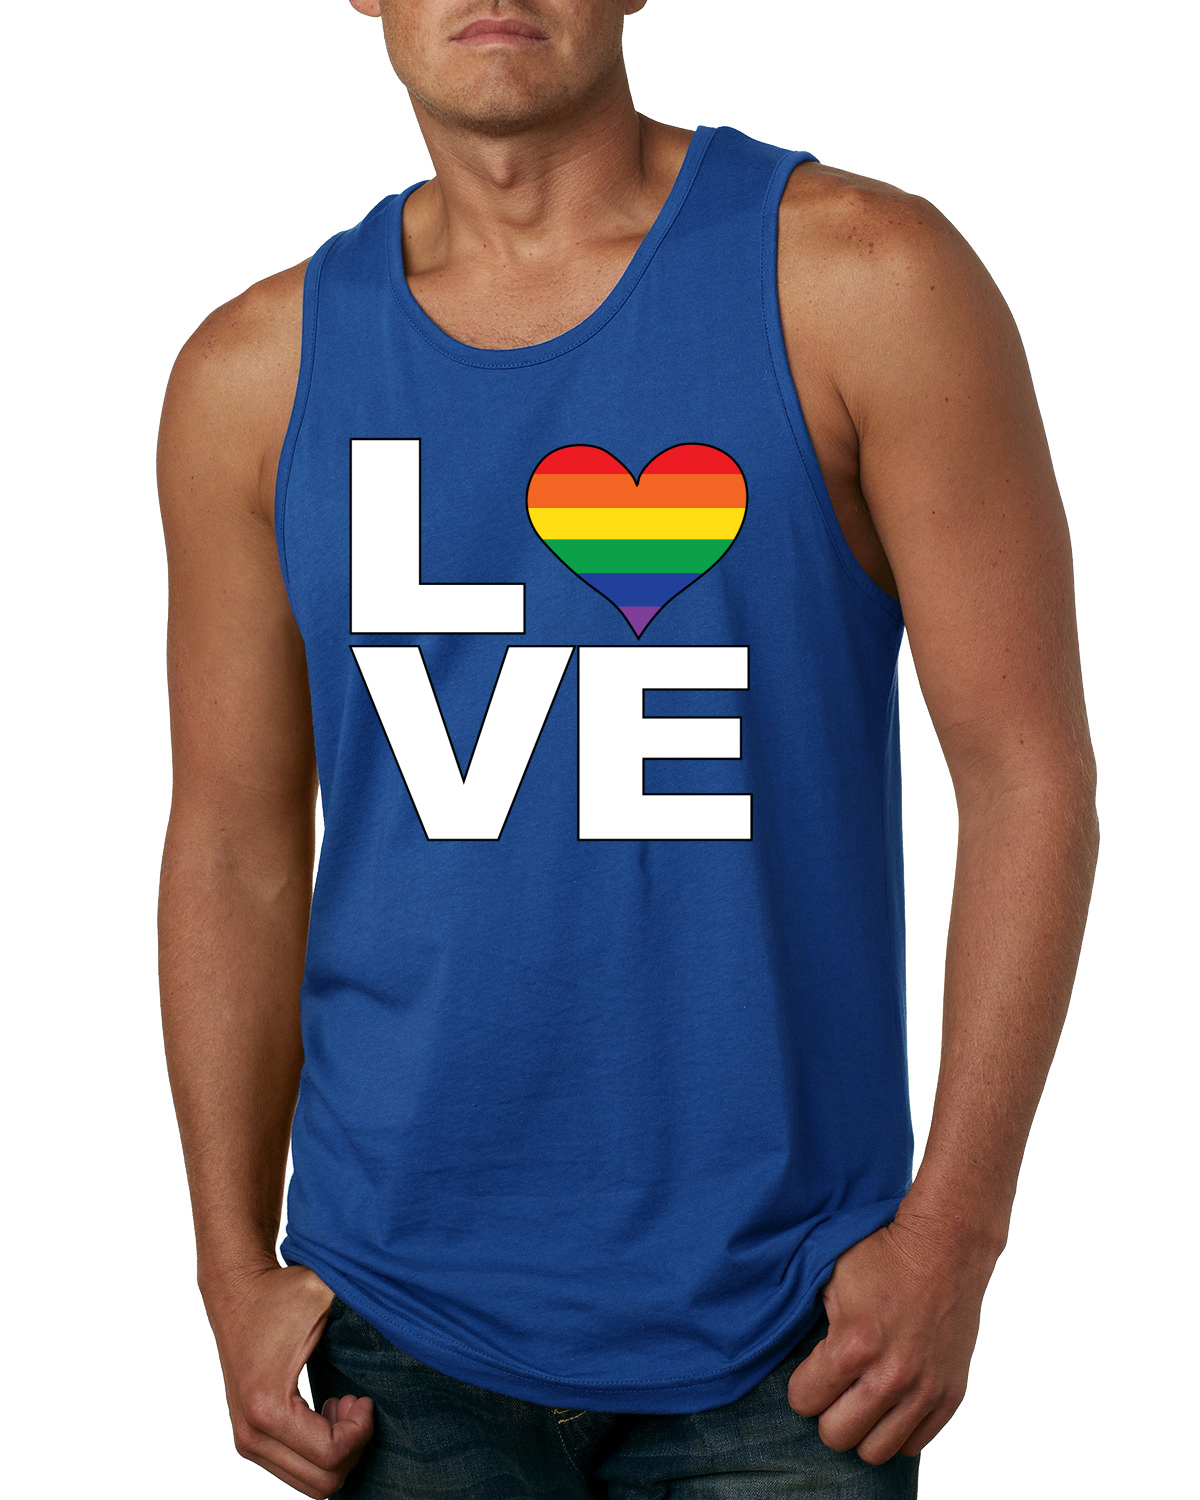 LGBTQIA Pride Jersey Tank Top